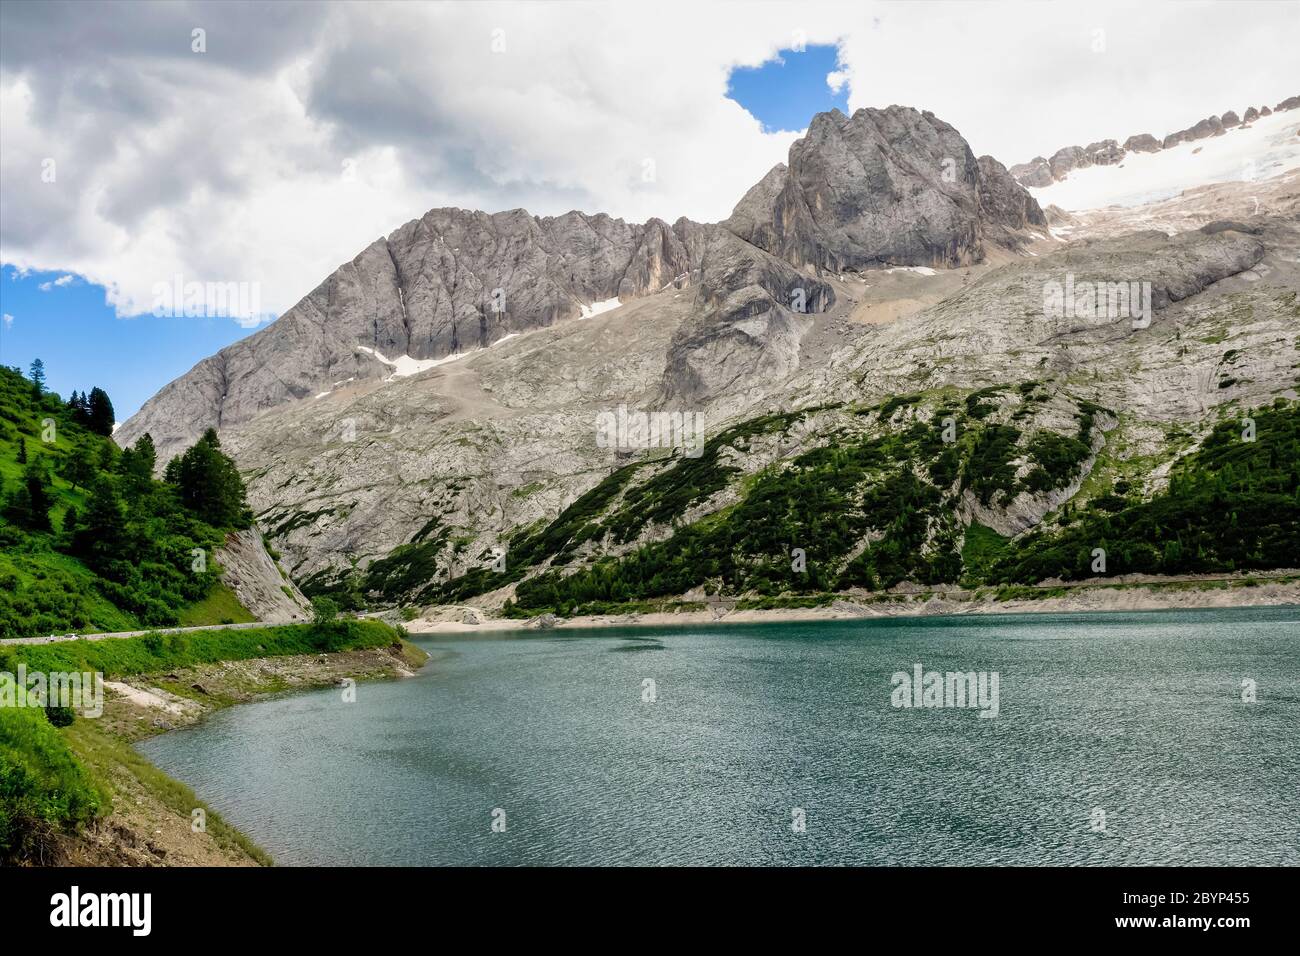 Alpine landscape in the Dolomites, Italy. Glacier Marmolada and Lago di Fedaia. Stock Photo